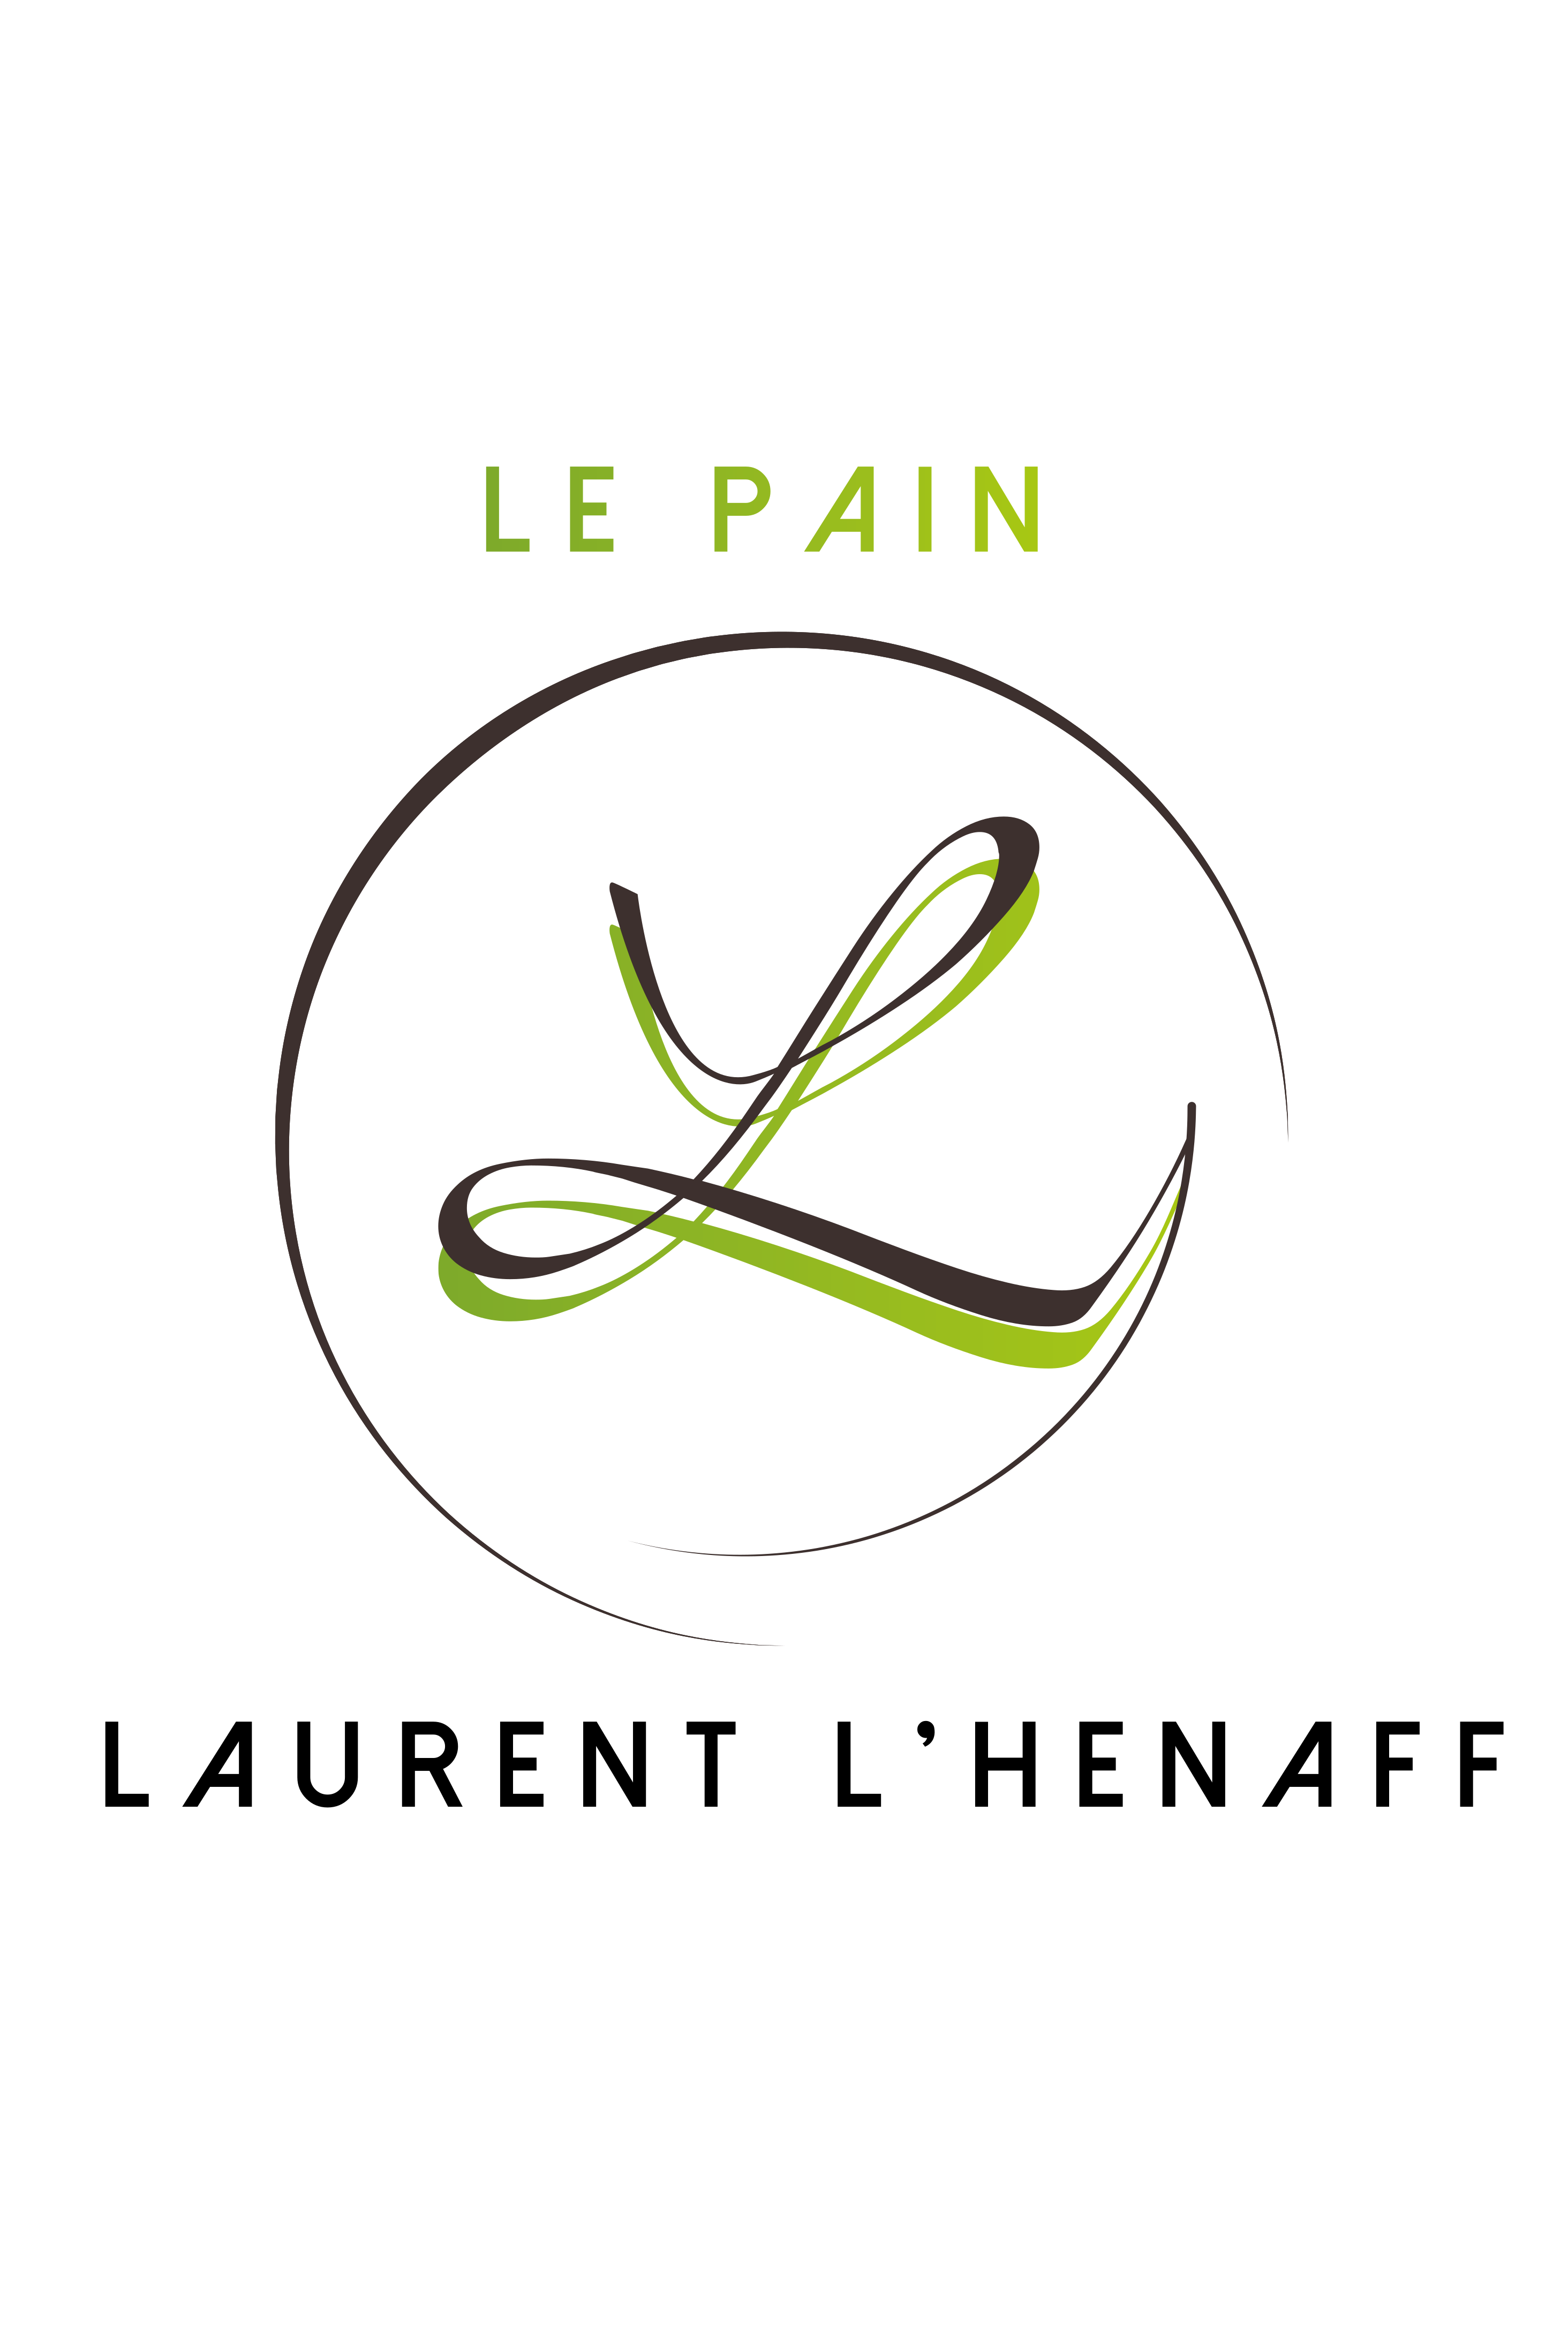 Le Pain Laurent L'Hénaff